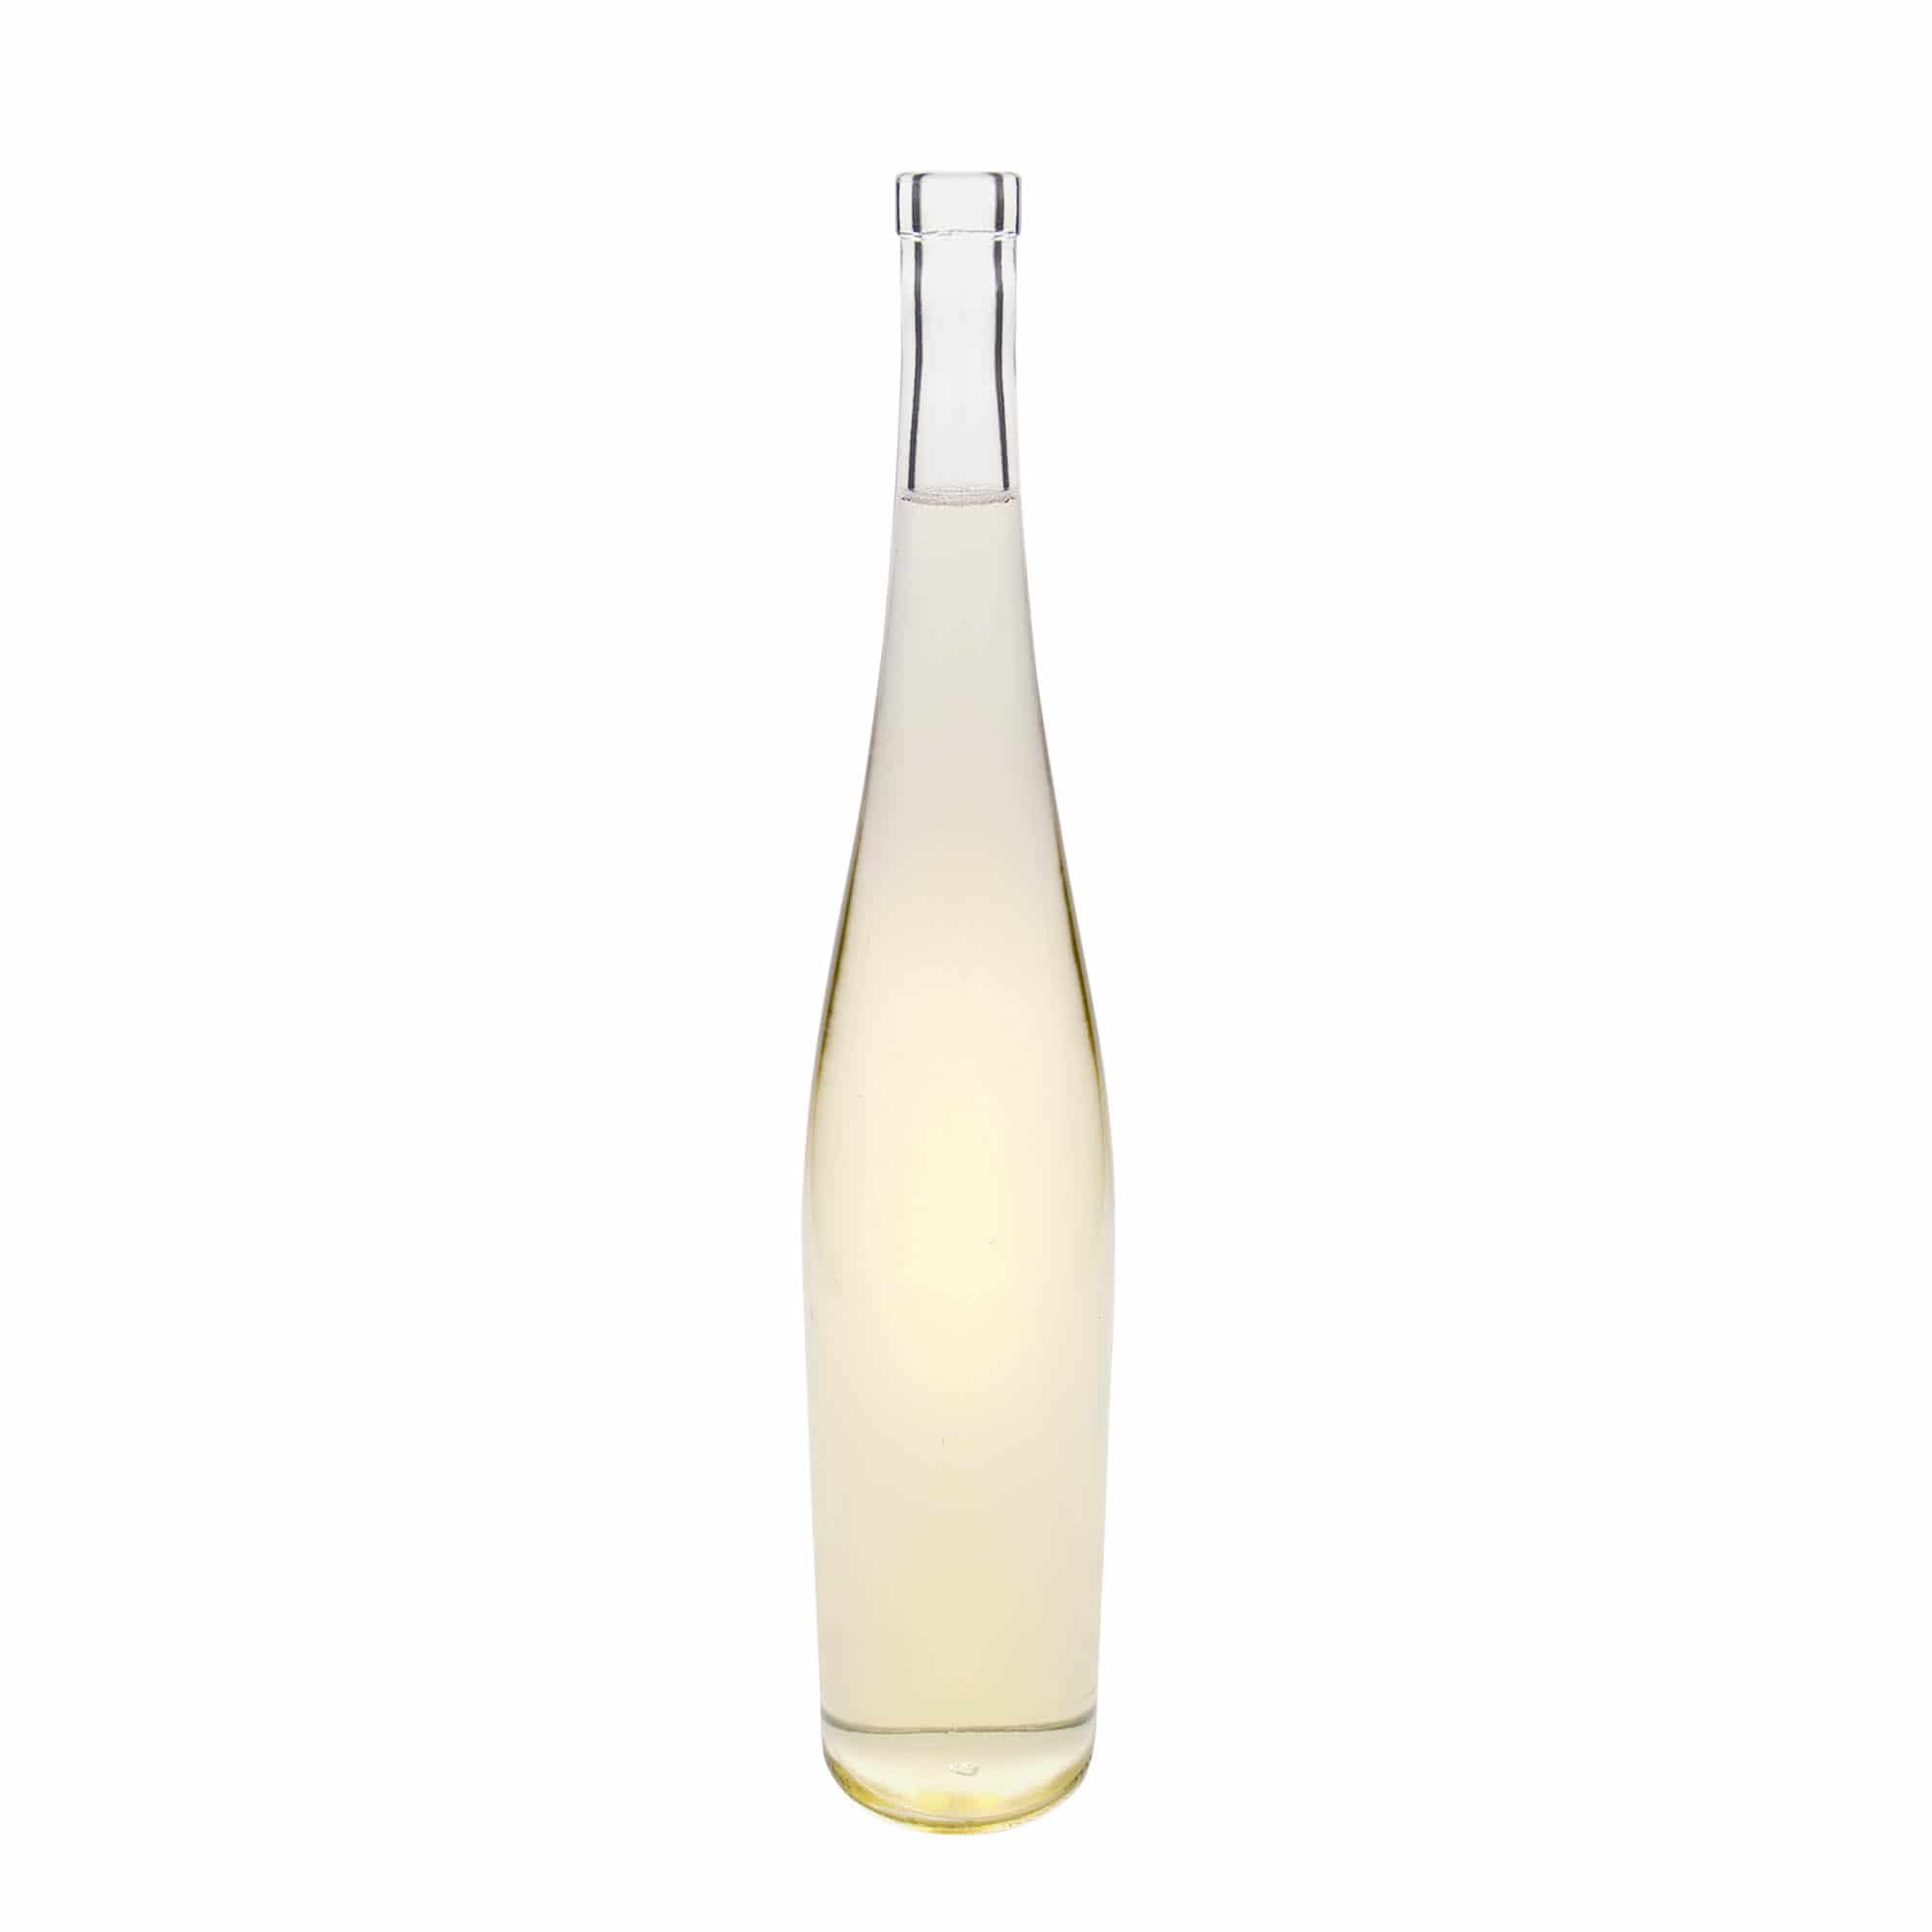 1.500 ml glasflaske 'Weinschlegel', åbning: Kork